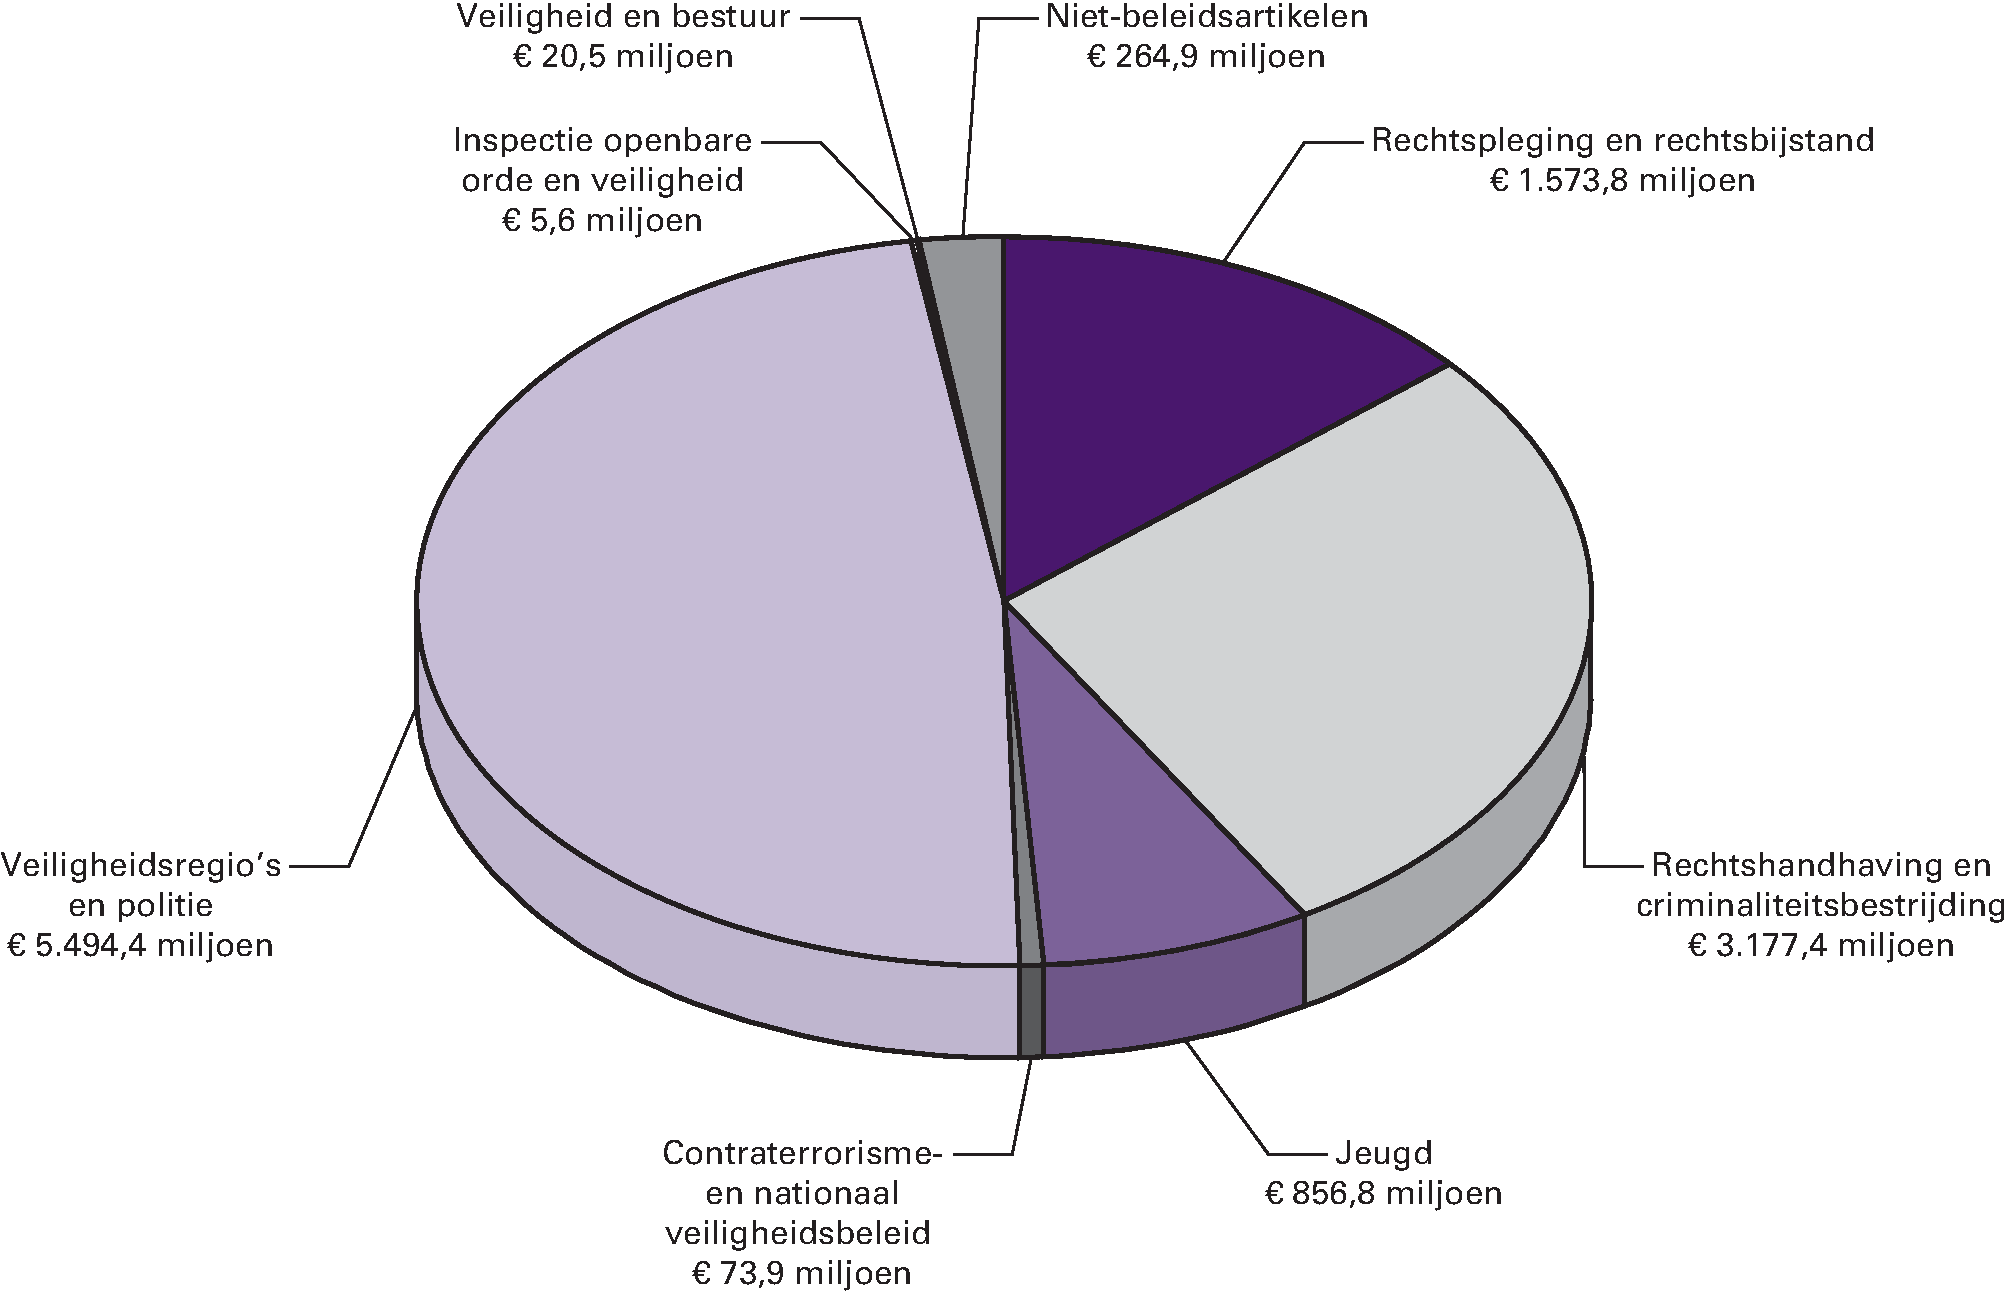 Gerealiseerde uitgaven van het ministerie in 2012 verdeeld over de beleidsartikelen en niet-beleidsartikelen Gerealiseerde uitgaven 2012 totaal €                    11.467,3                   mln.